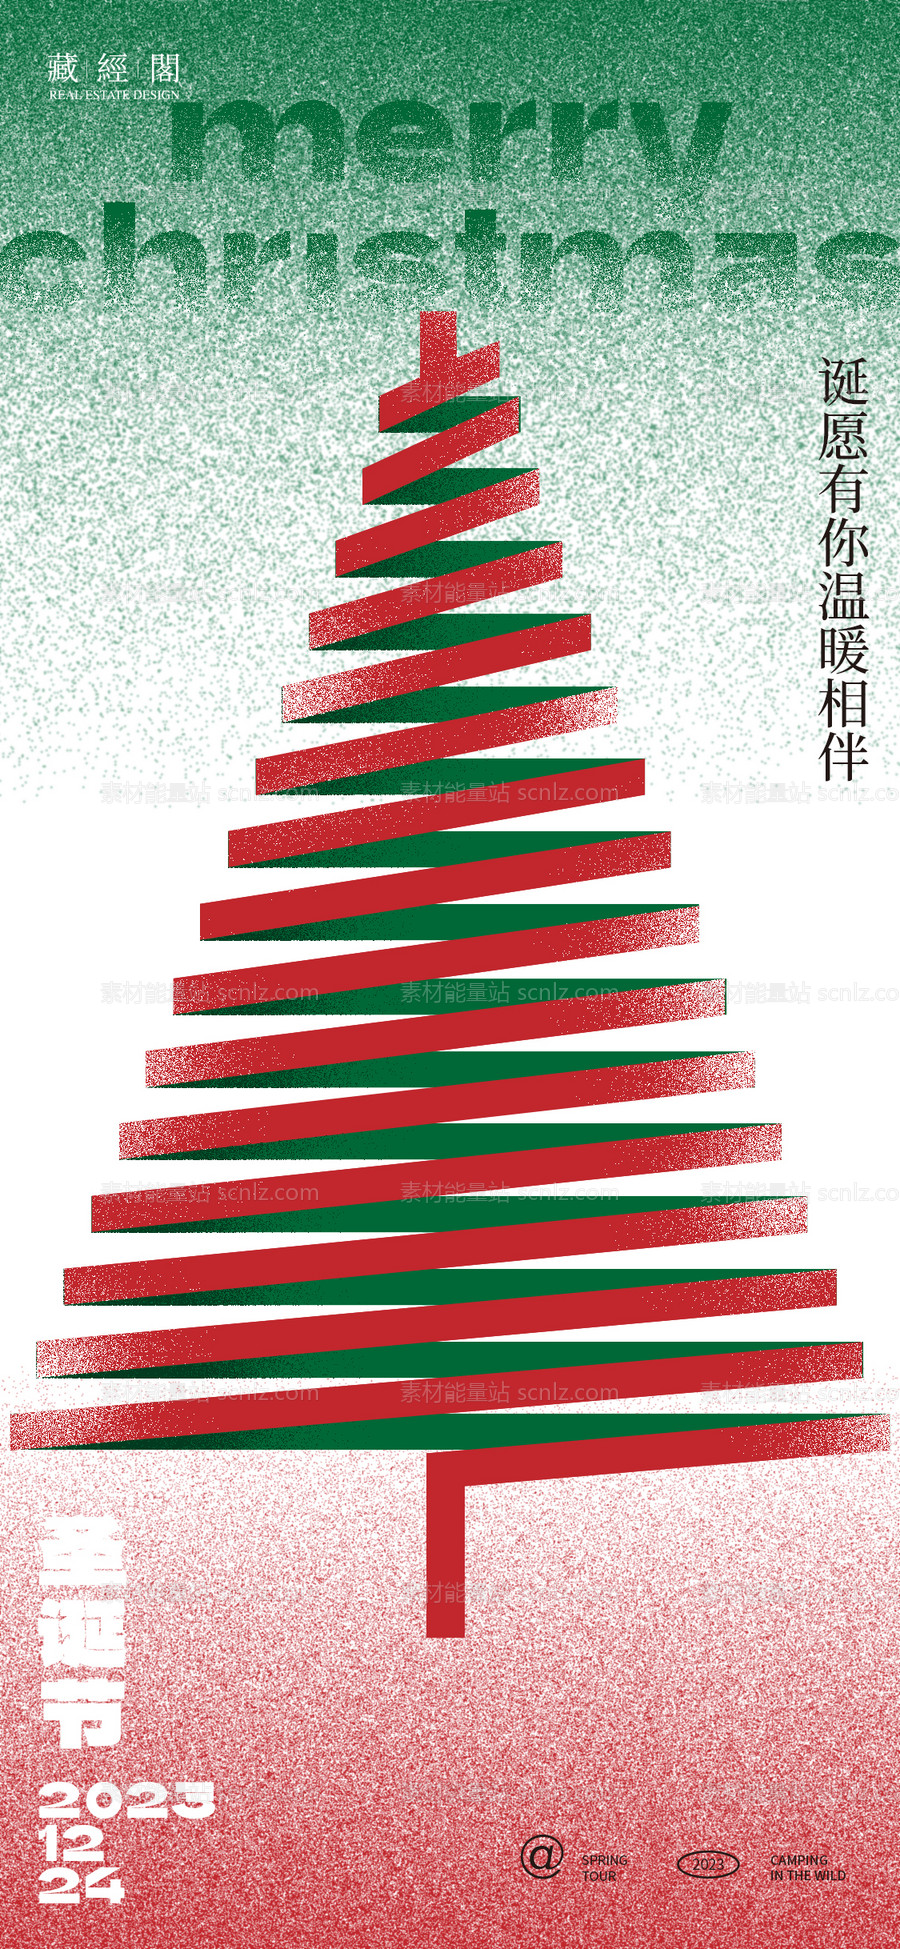 素材能量站-圣诞节海报